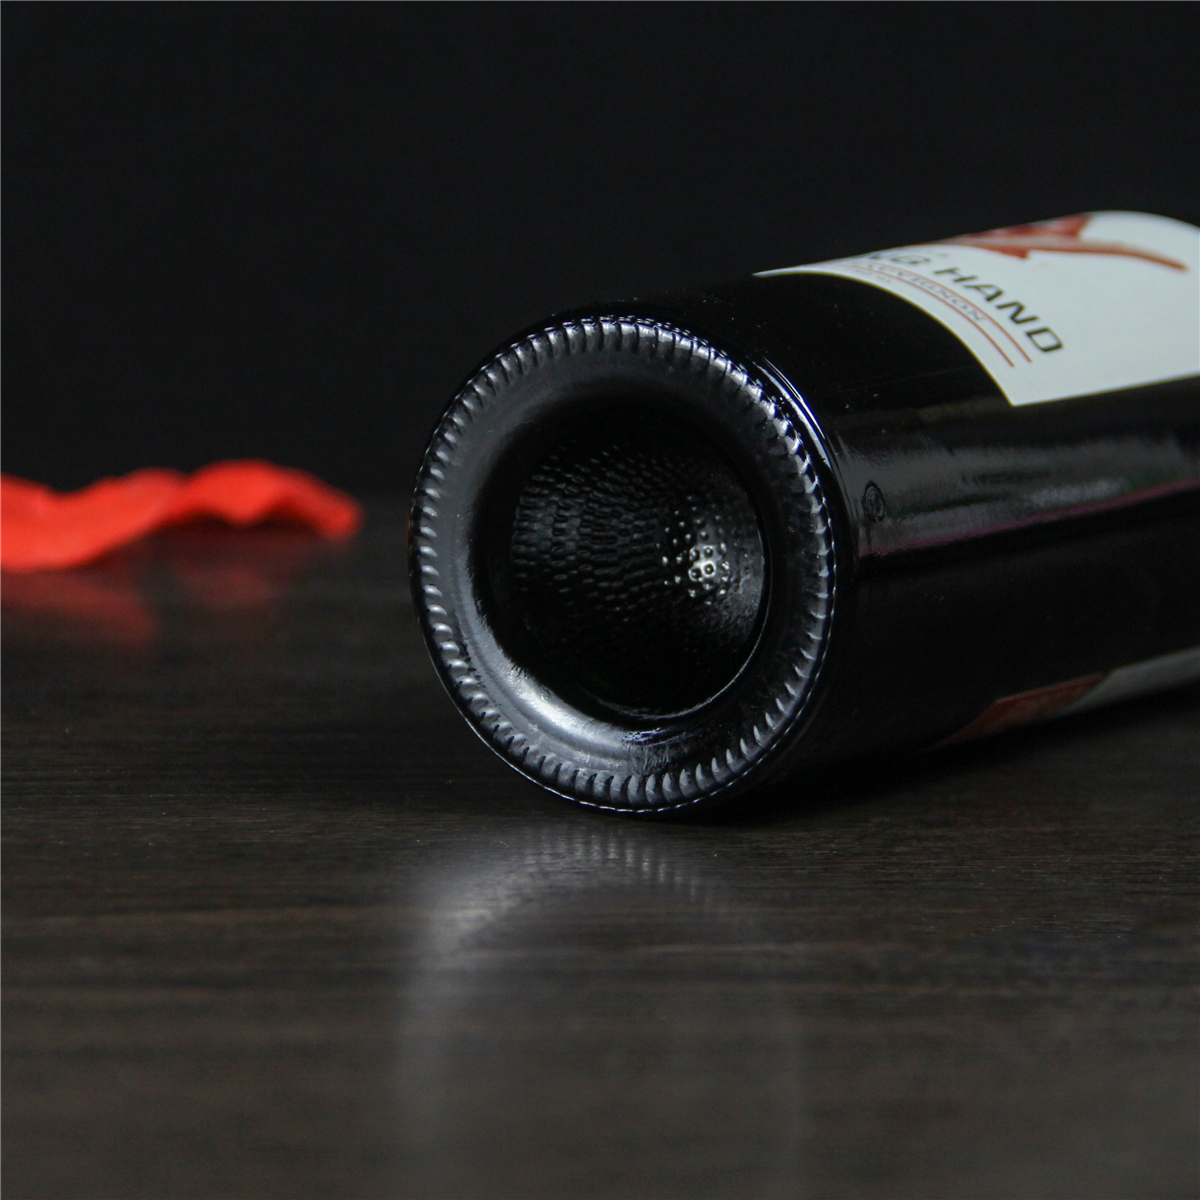 智利库里科谷凯旋之手精选赤霞珠干红葡萄酒红酒